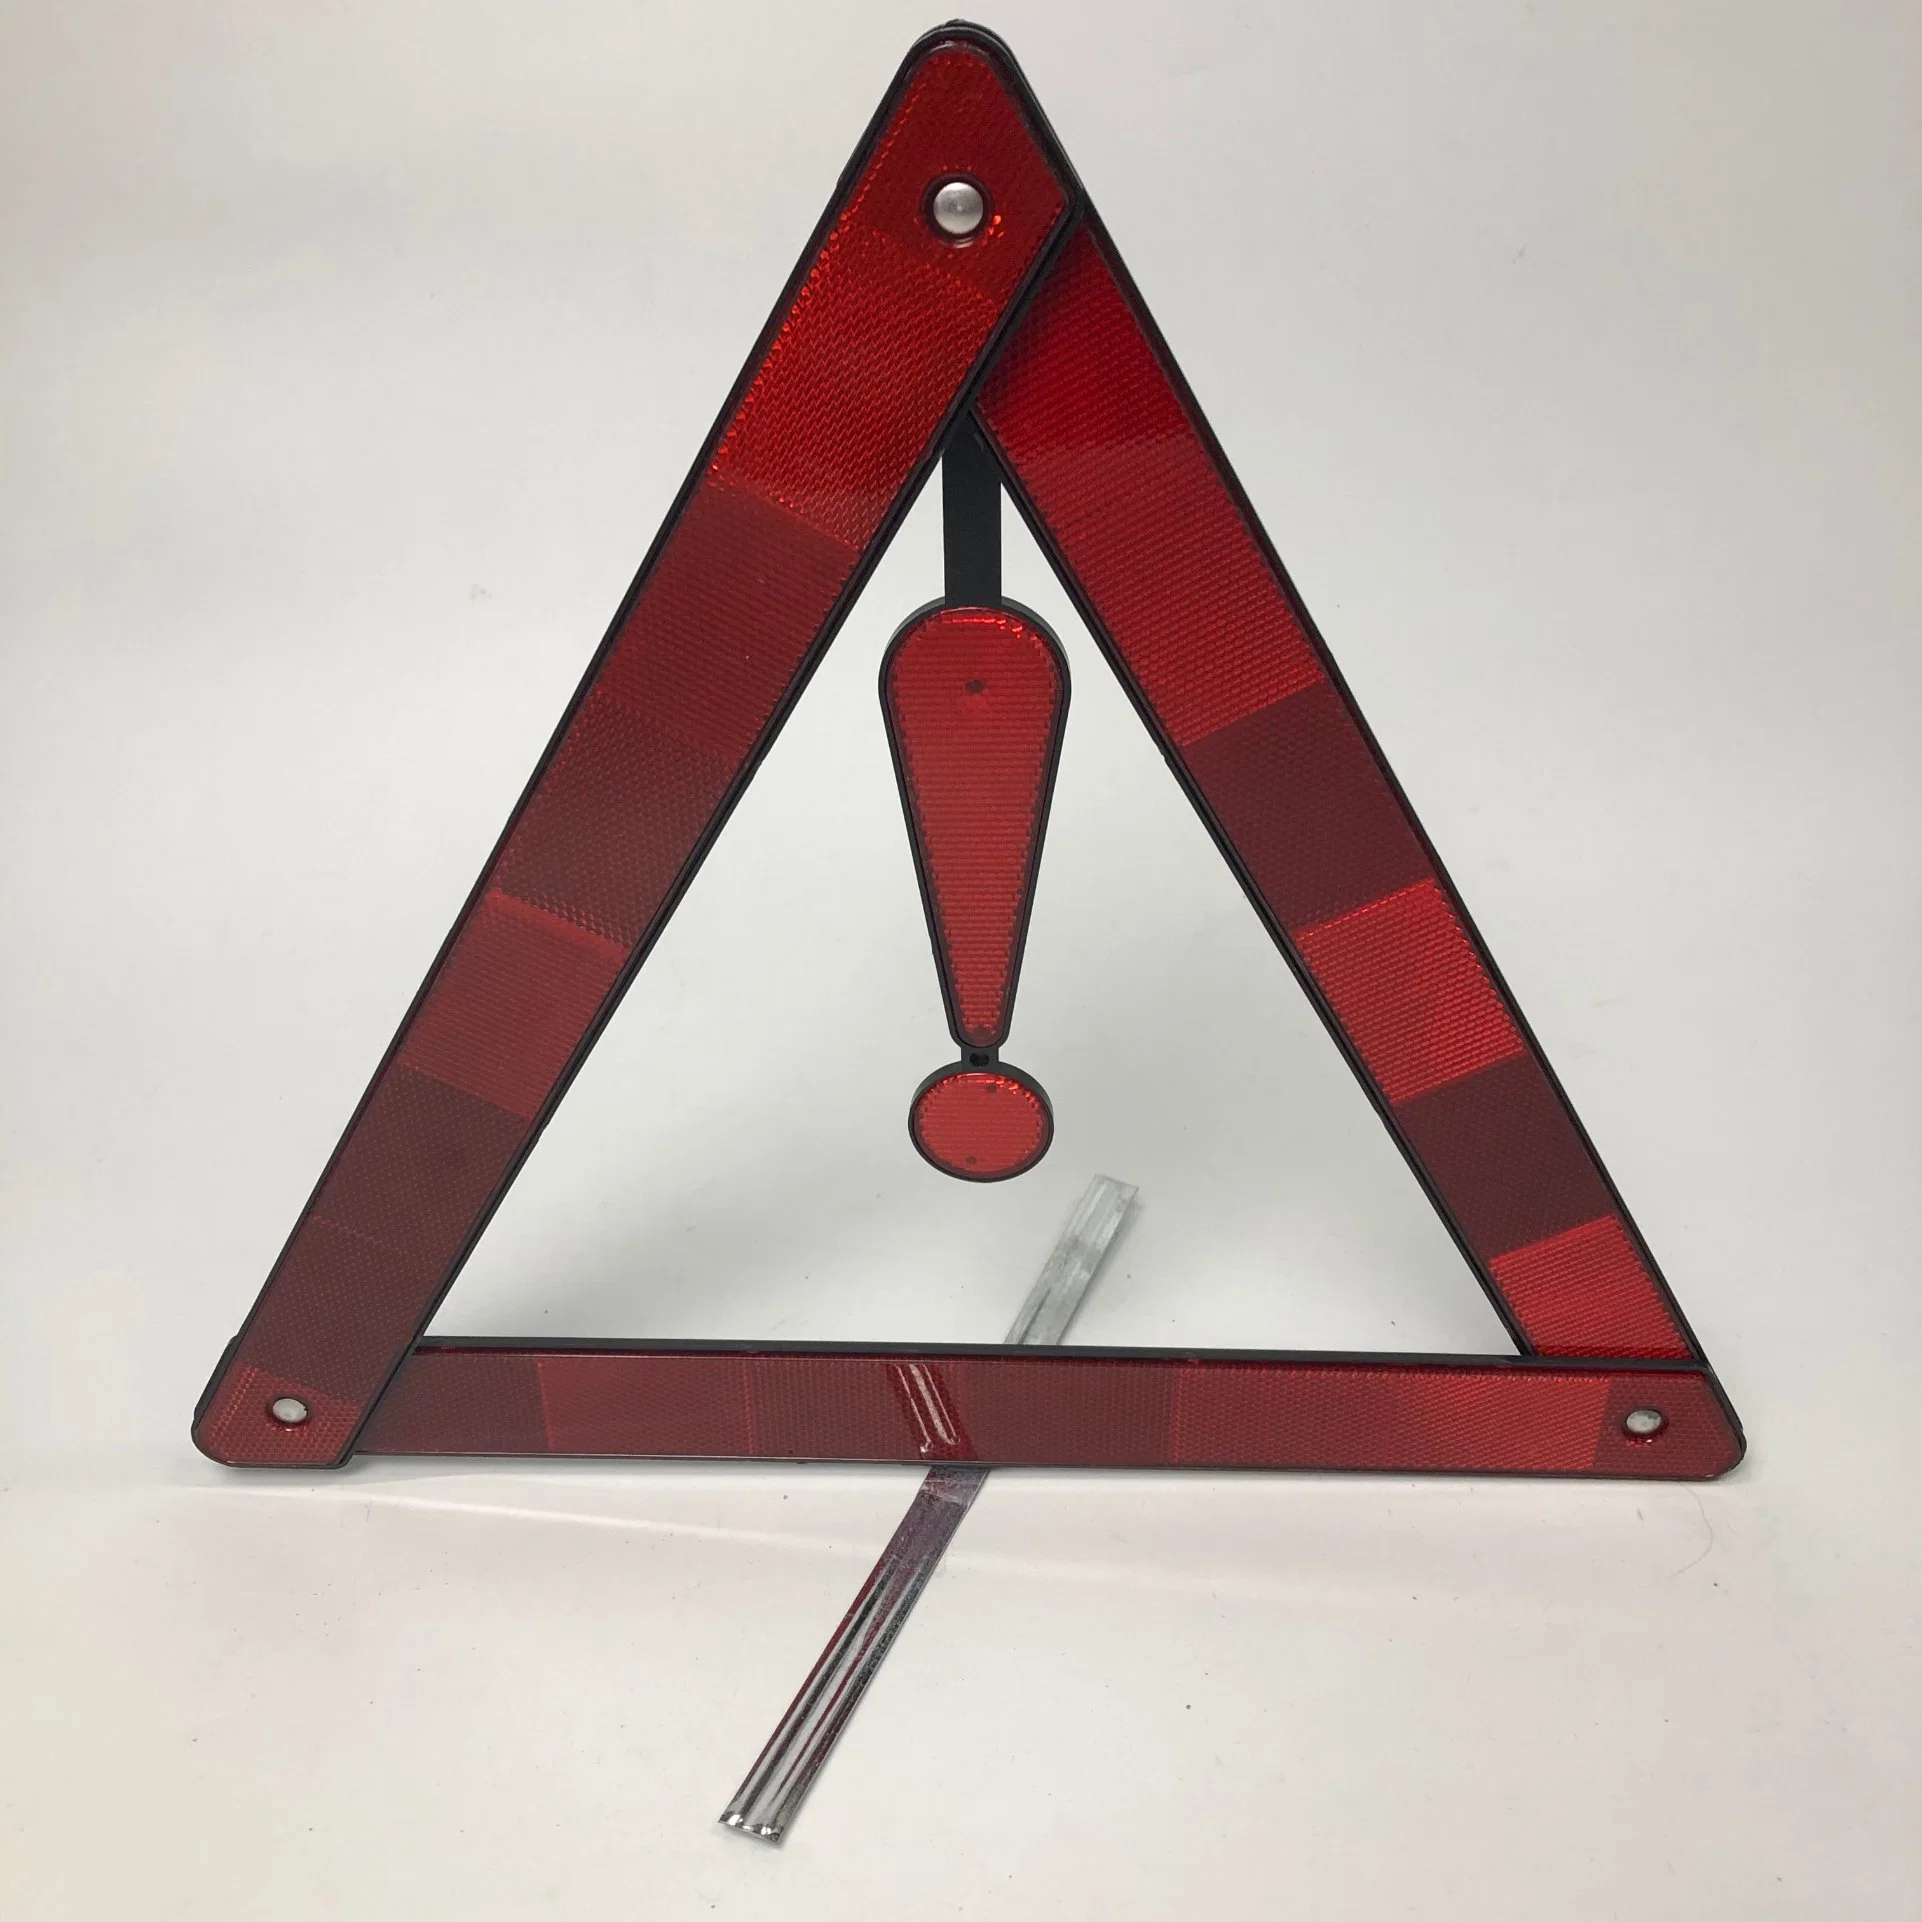 Reflectante triangular señales de advertencia de las fábricas chinas con señales de advertencia de alta calidad para apoyar el etiquetado